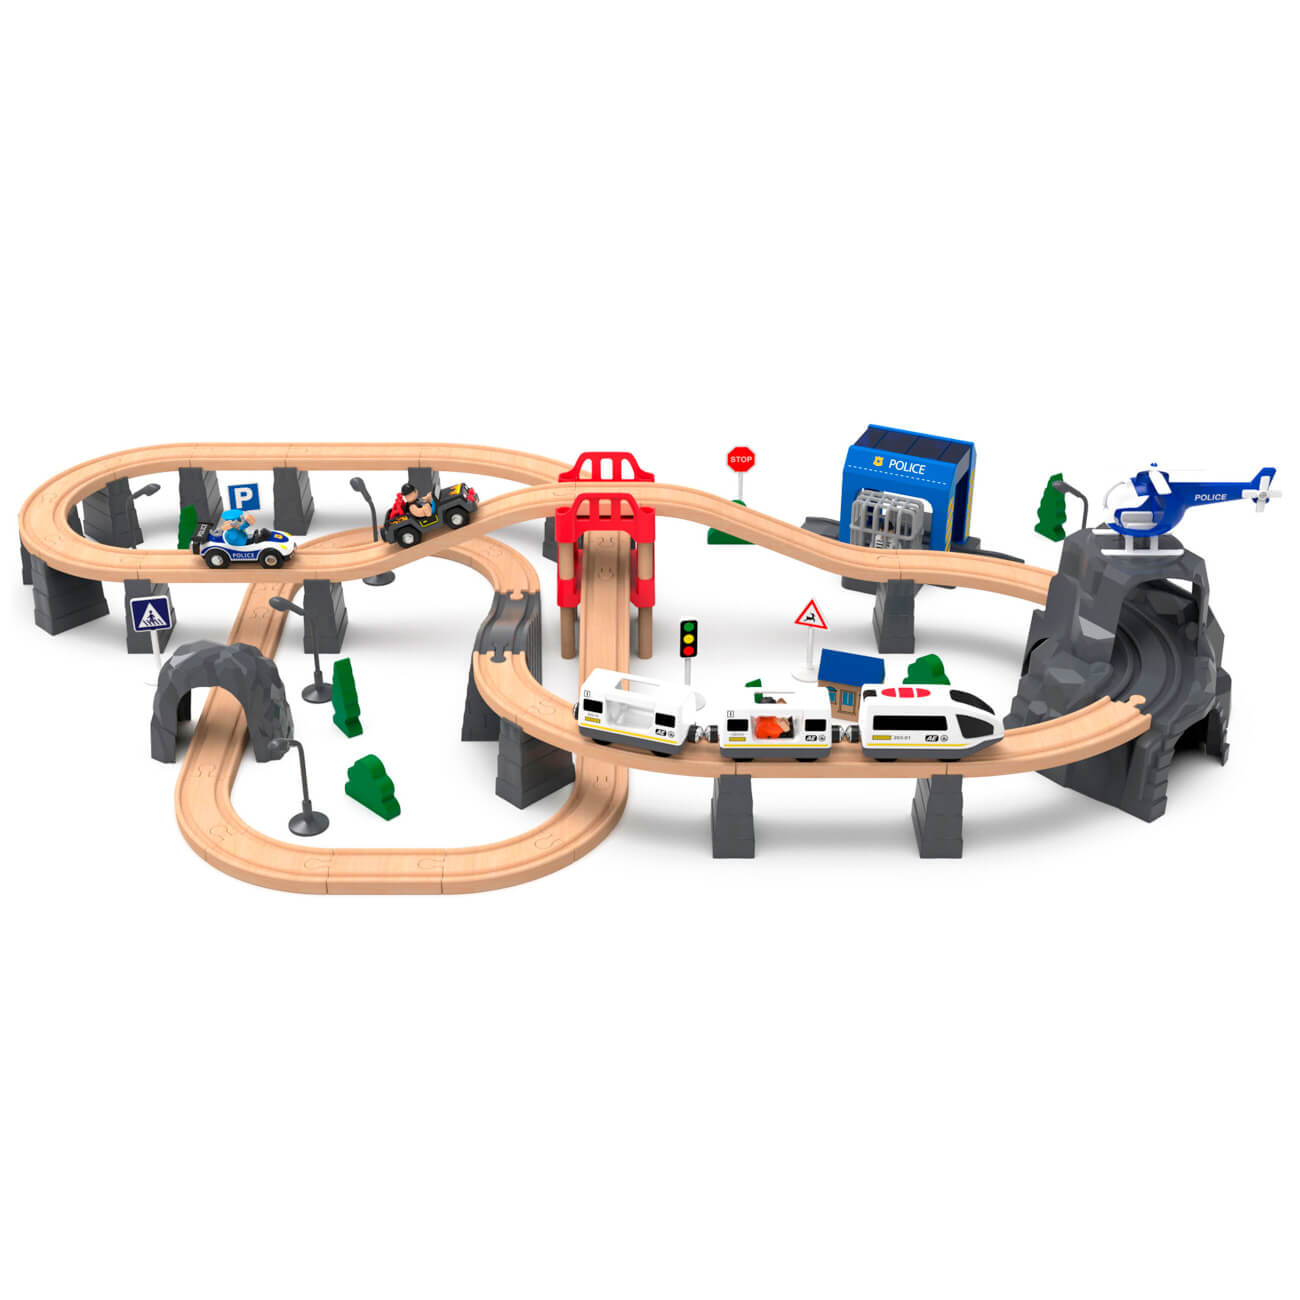 Железная дорога игрушечная, 98 см, дерево/пластик, Электропоезд, Game rail железная дорога вверх по радуге в пакете